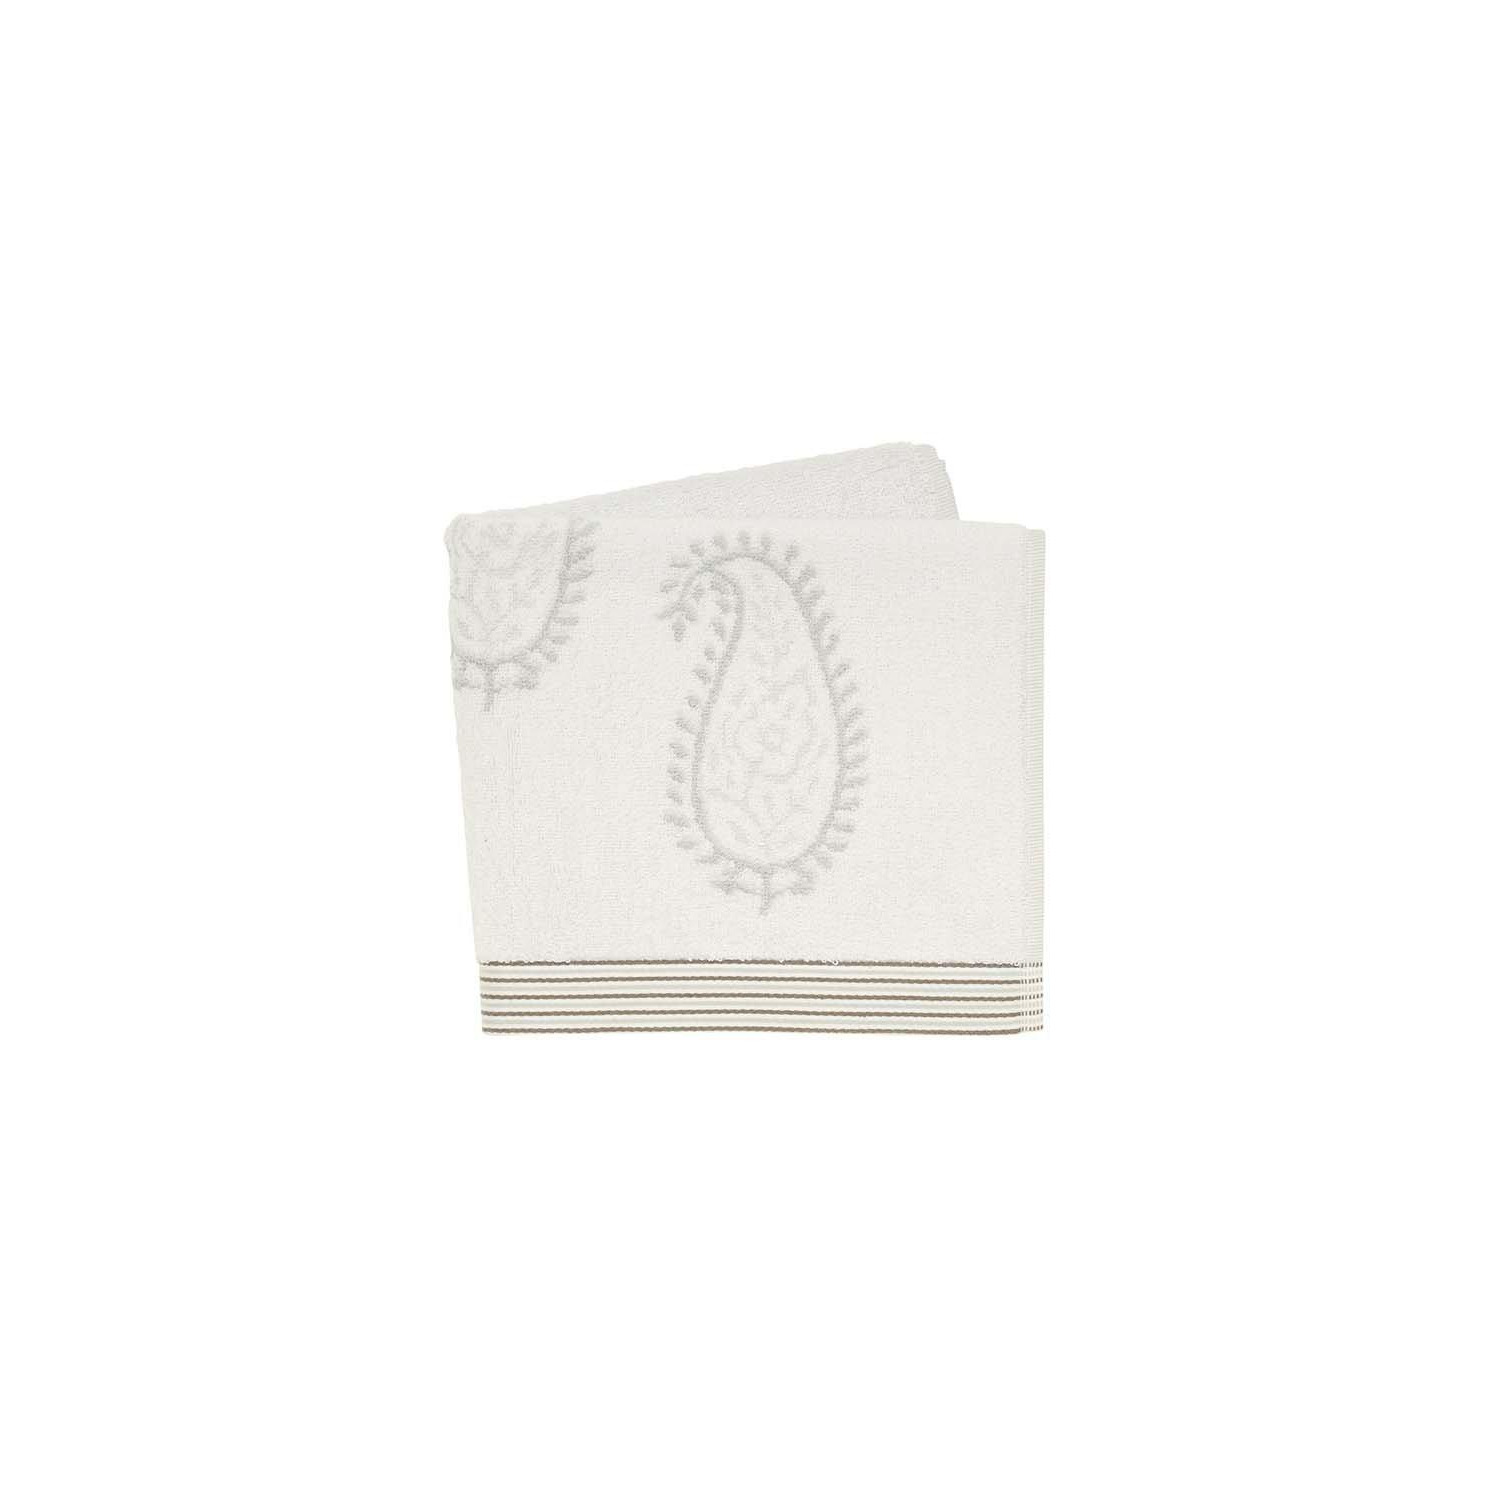 'Esme' Cotton Towels - image 1